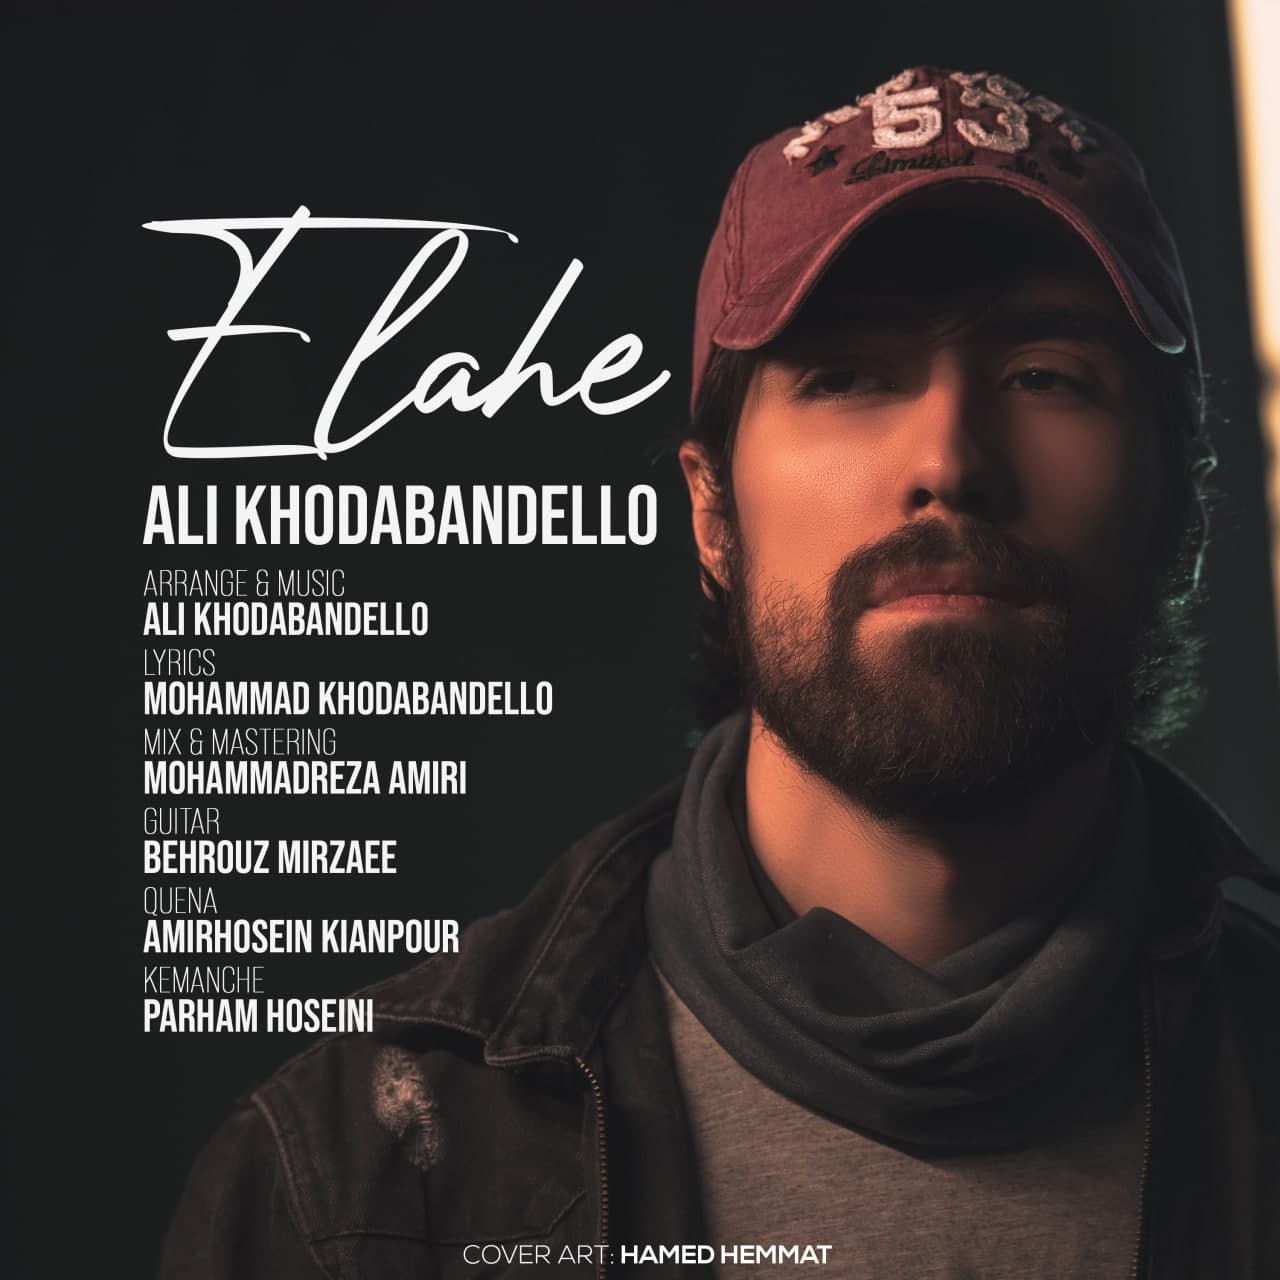  دانلود آهنگ جدید علی خدابنده لو - الهه | Download New Music By Ali Khodabandello - Elahe